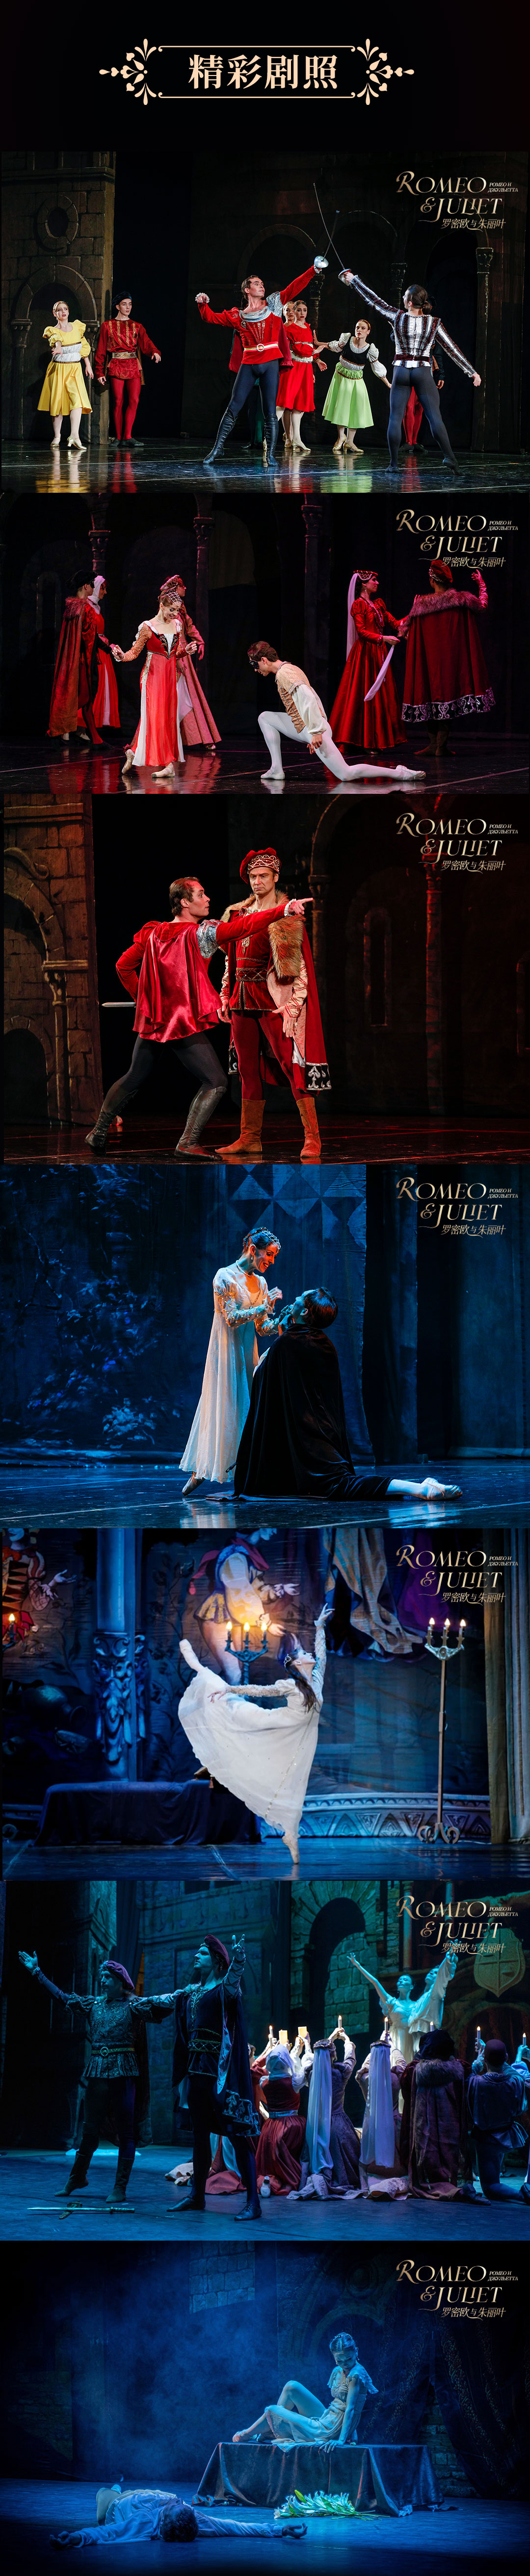 俄罗斯莫斯科芭蕾舞团 芭蕾舞剧《罗密欧与朱丽叶》